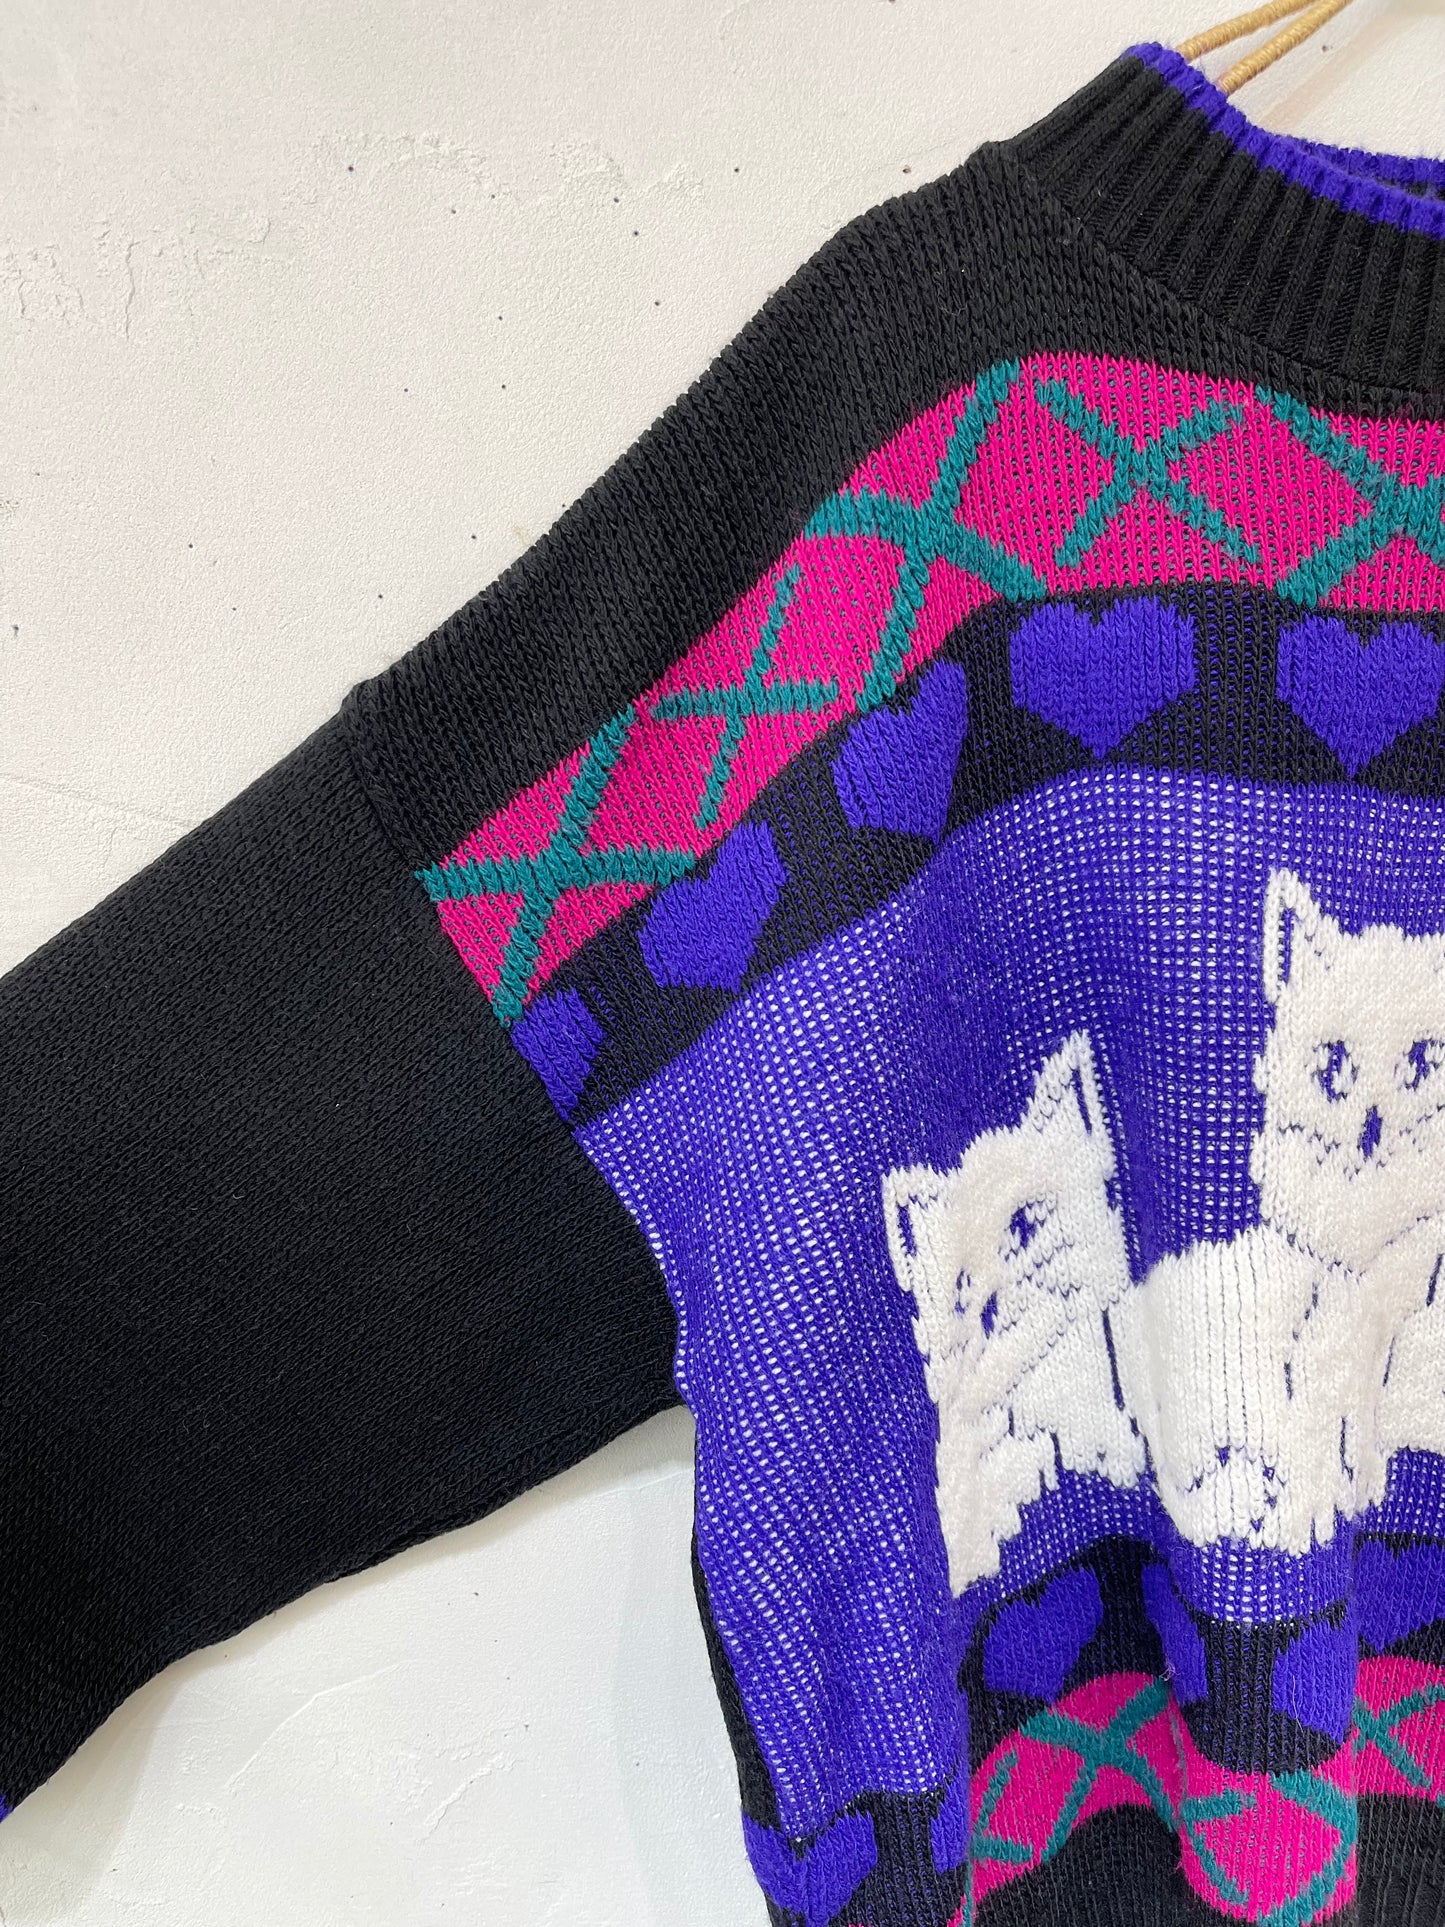 ’80s Vintage Fancy Knit Sweater［K25524］